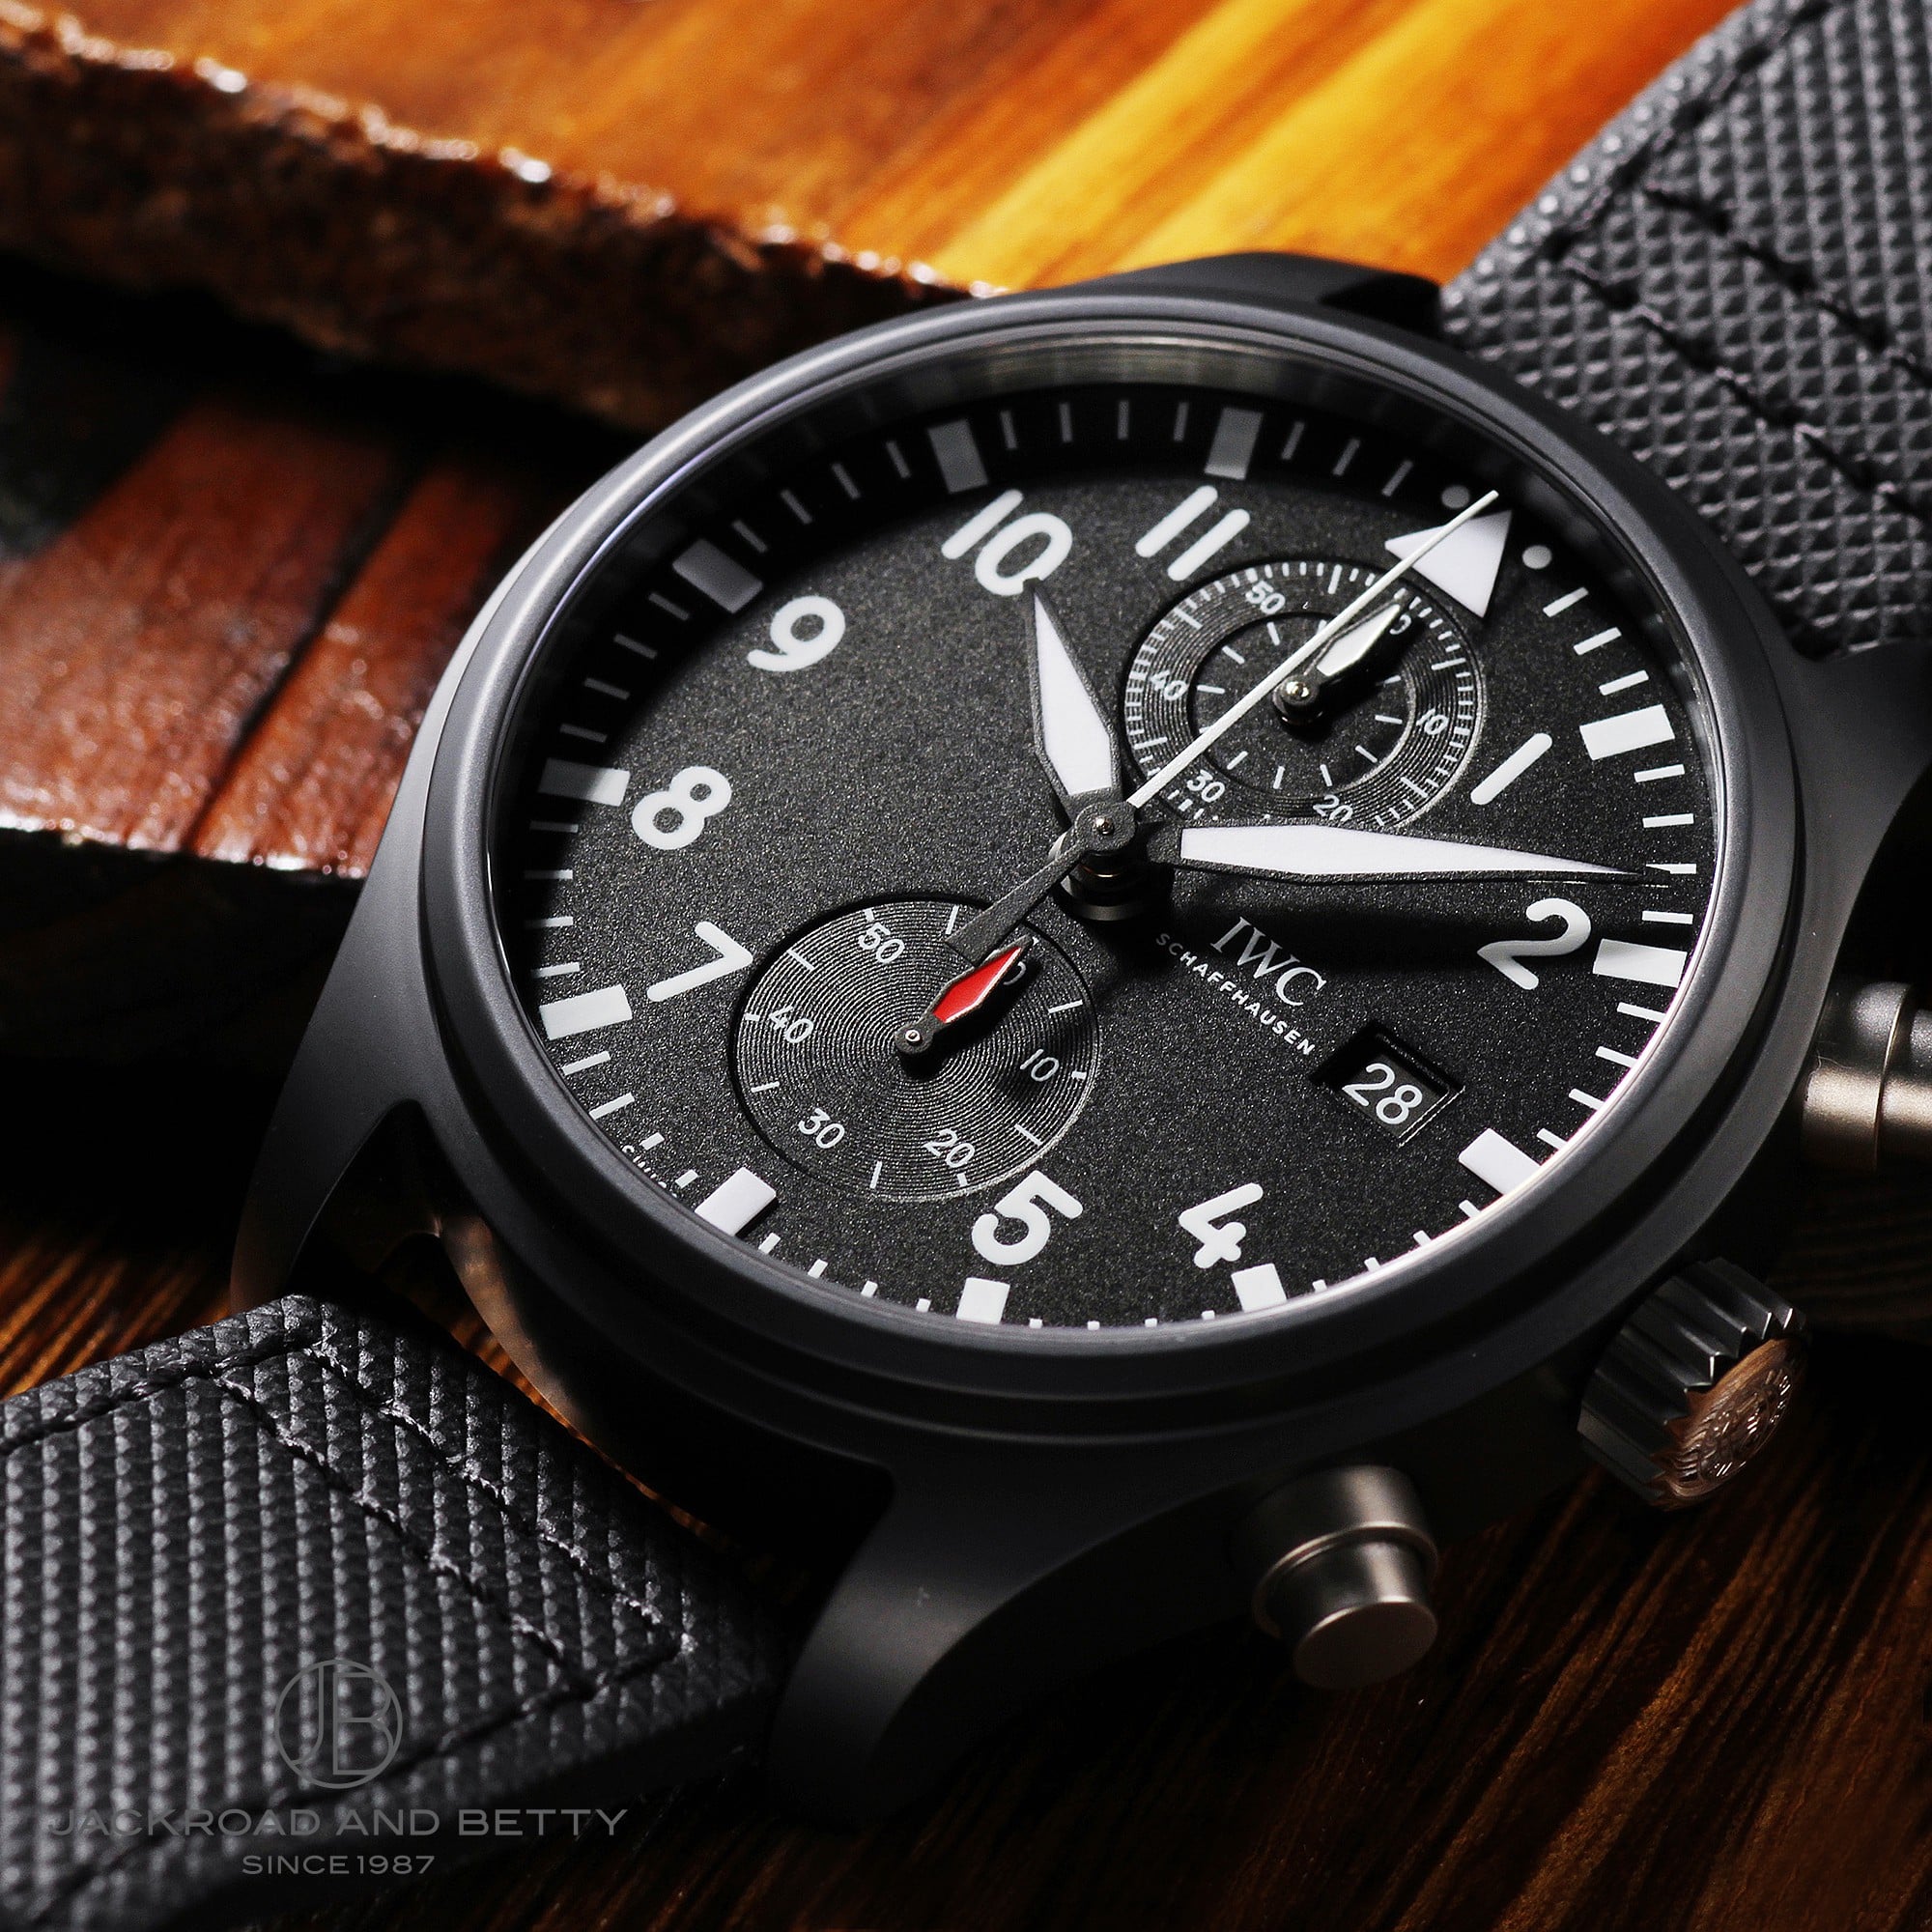 インターナショナルウォッチカンパニー IWC IW389001 ブラック メンズ 腕時計